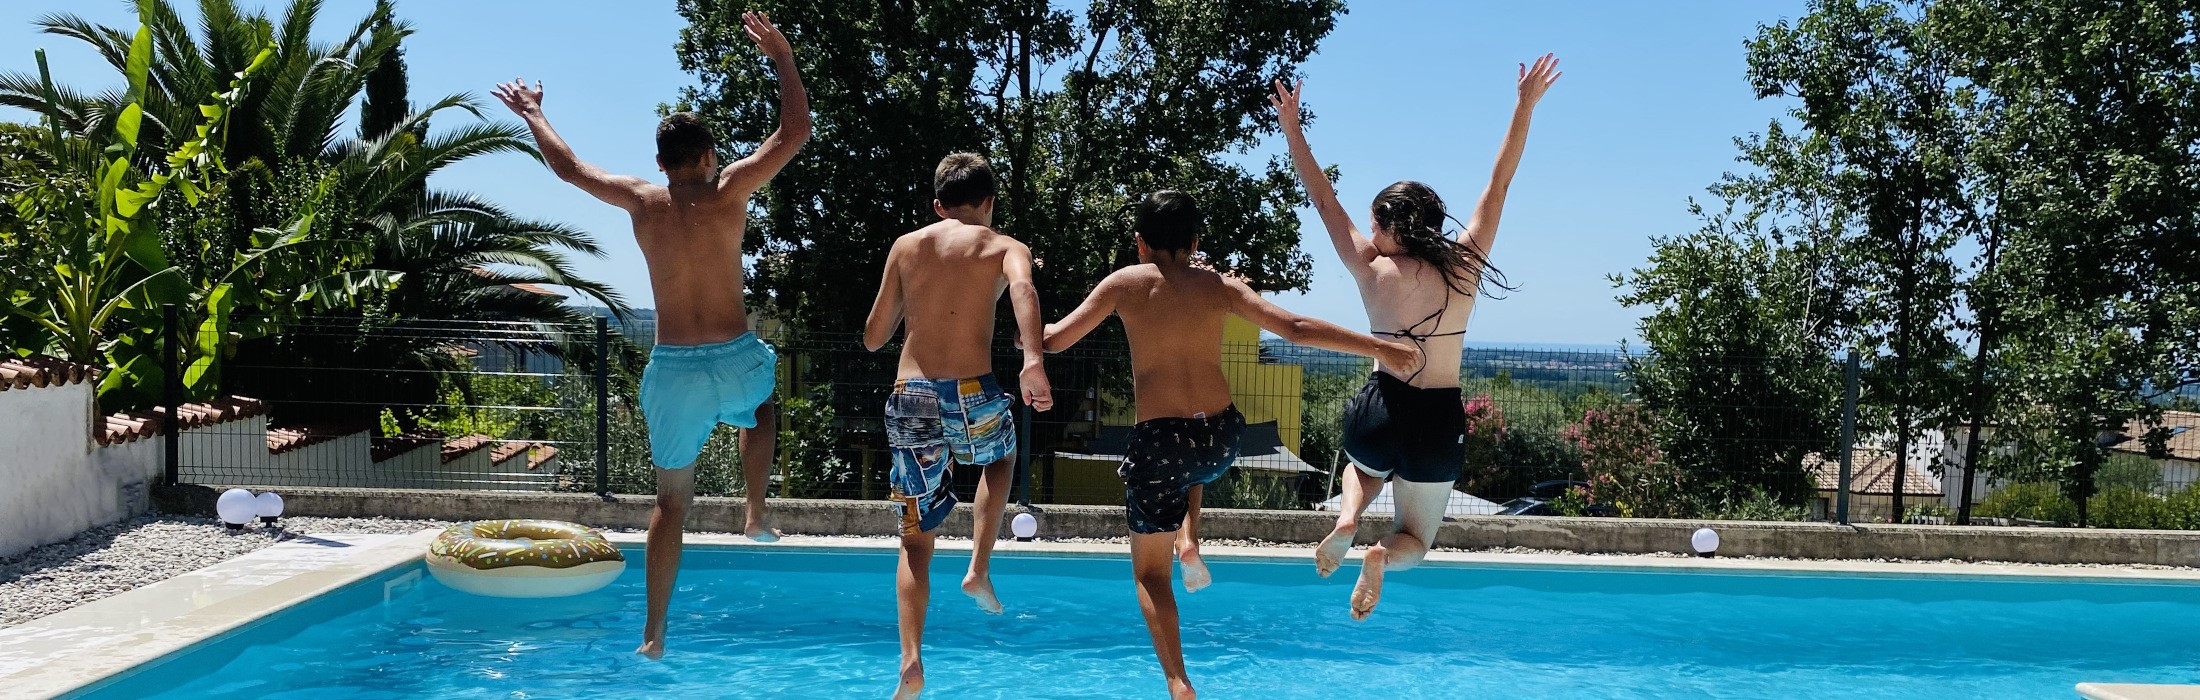 Kinder springen in den Pool